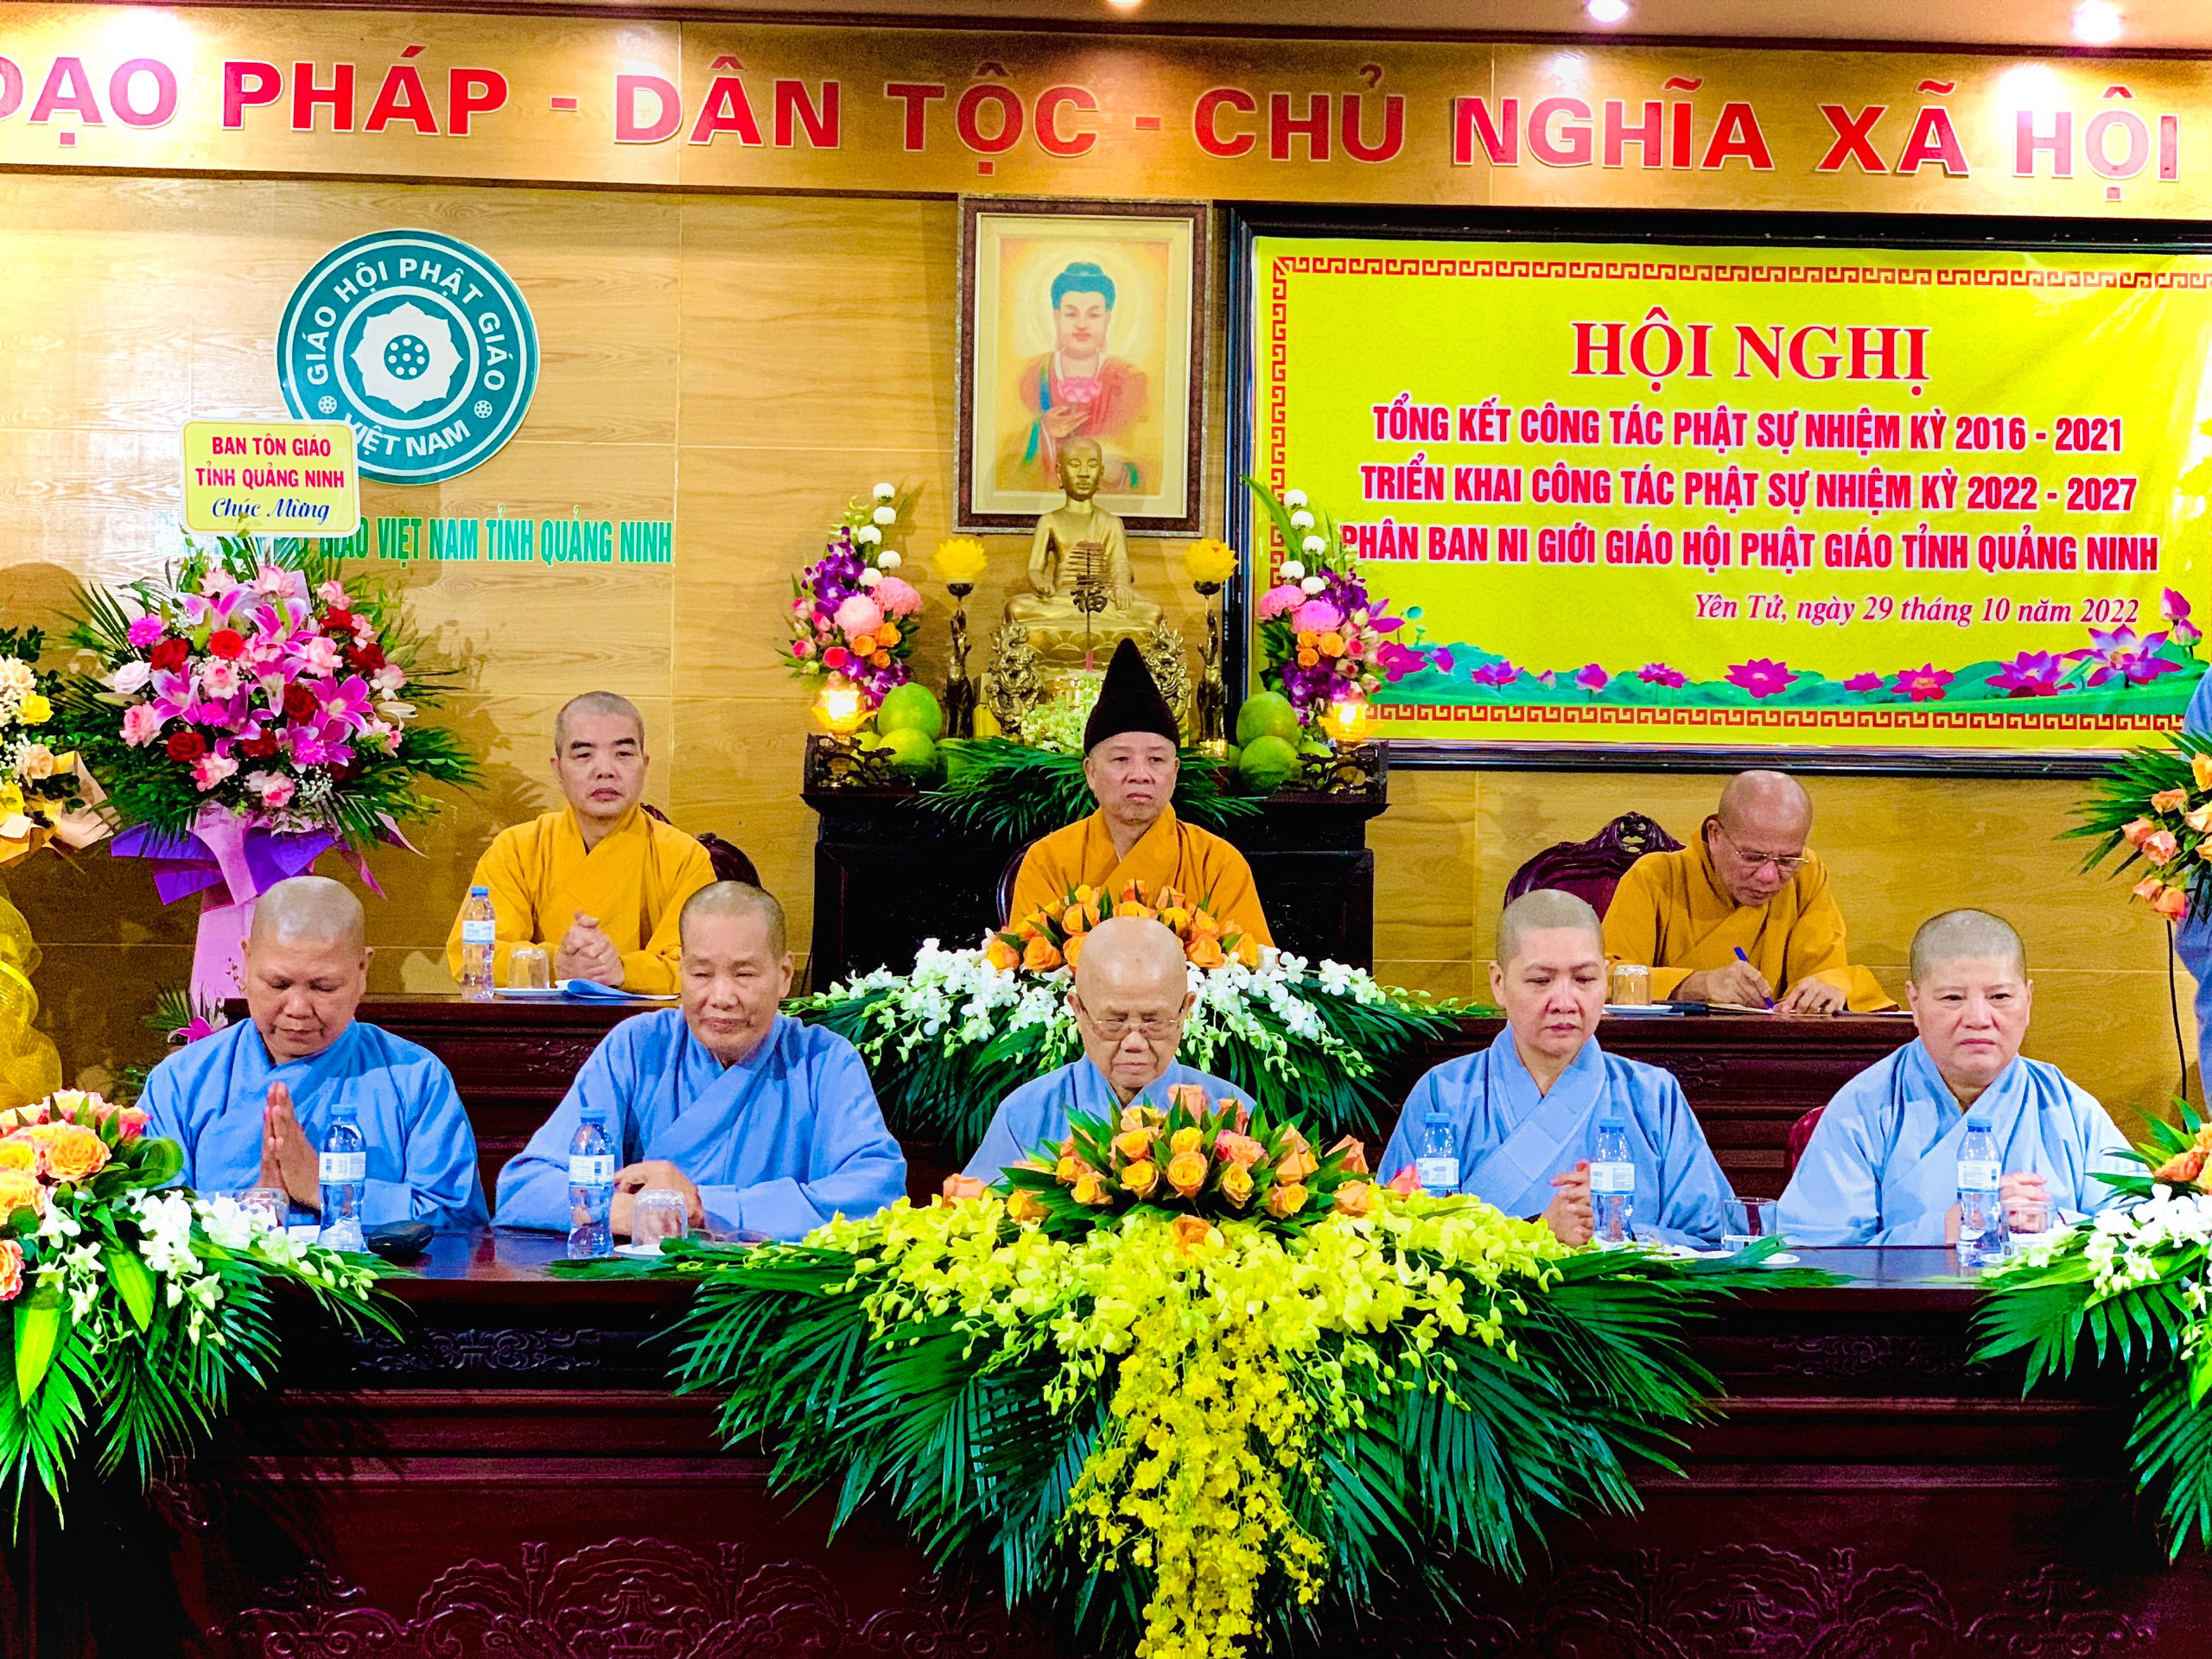 Phân ban Ni giới tỉnh Quảng Ninh họp triển khai công tác Phật sự nhiệm kỳ 2022 -2027 